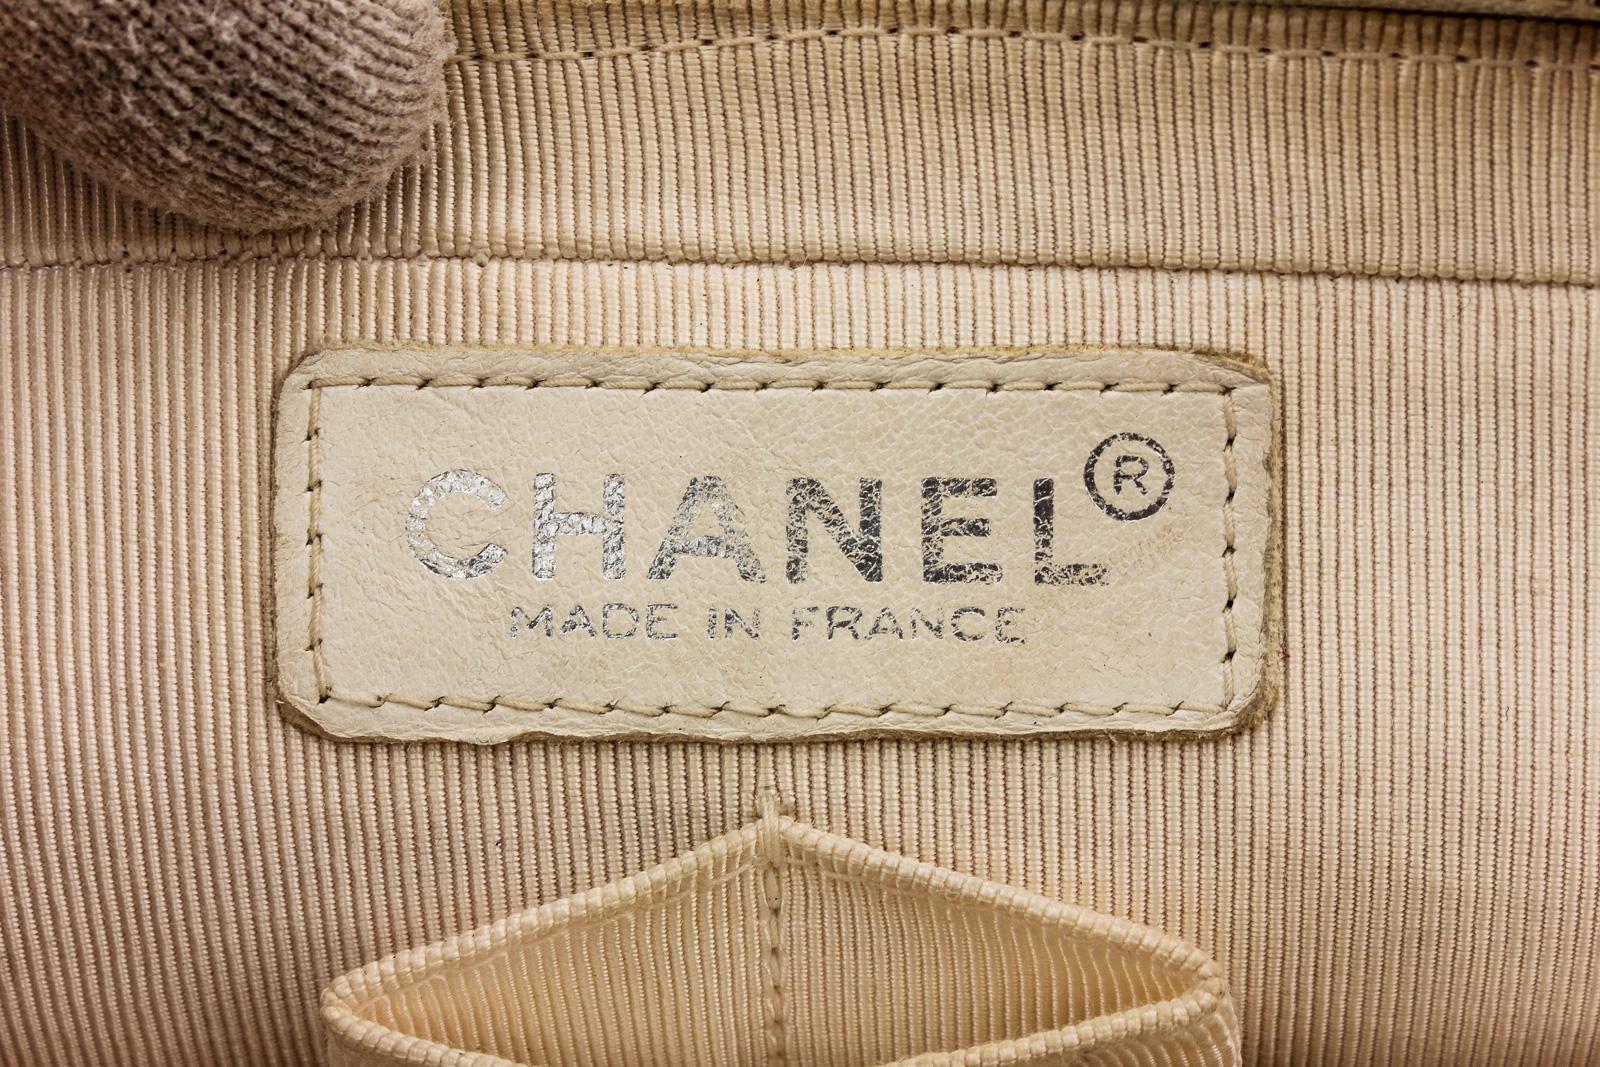  Chanel - Sac à rabat en toile matelassée bleu et blanc - Plage Surf Unisexe 